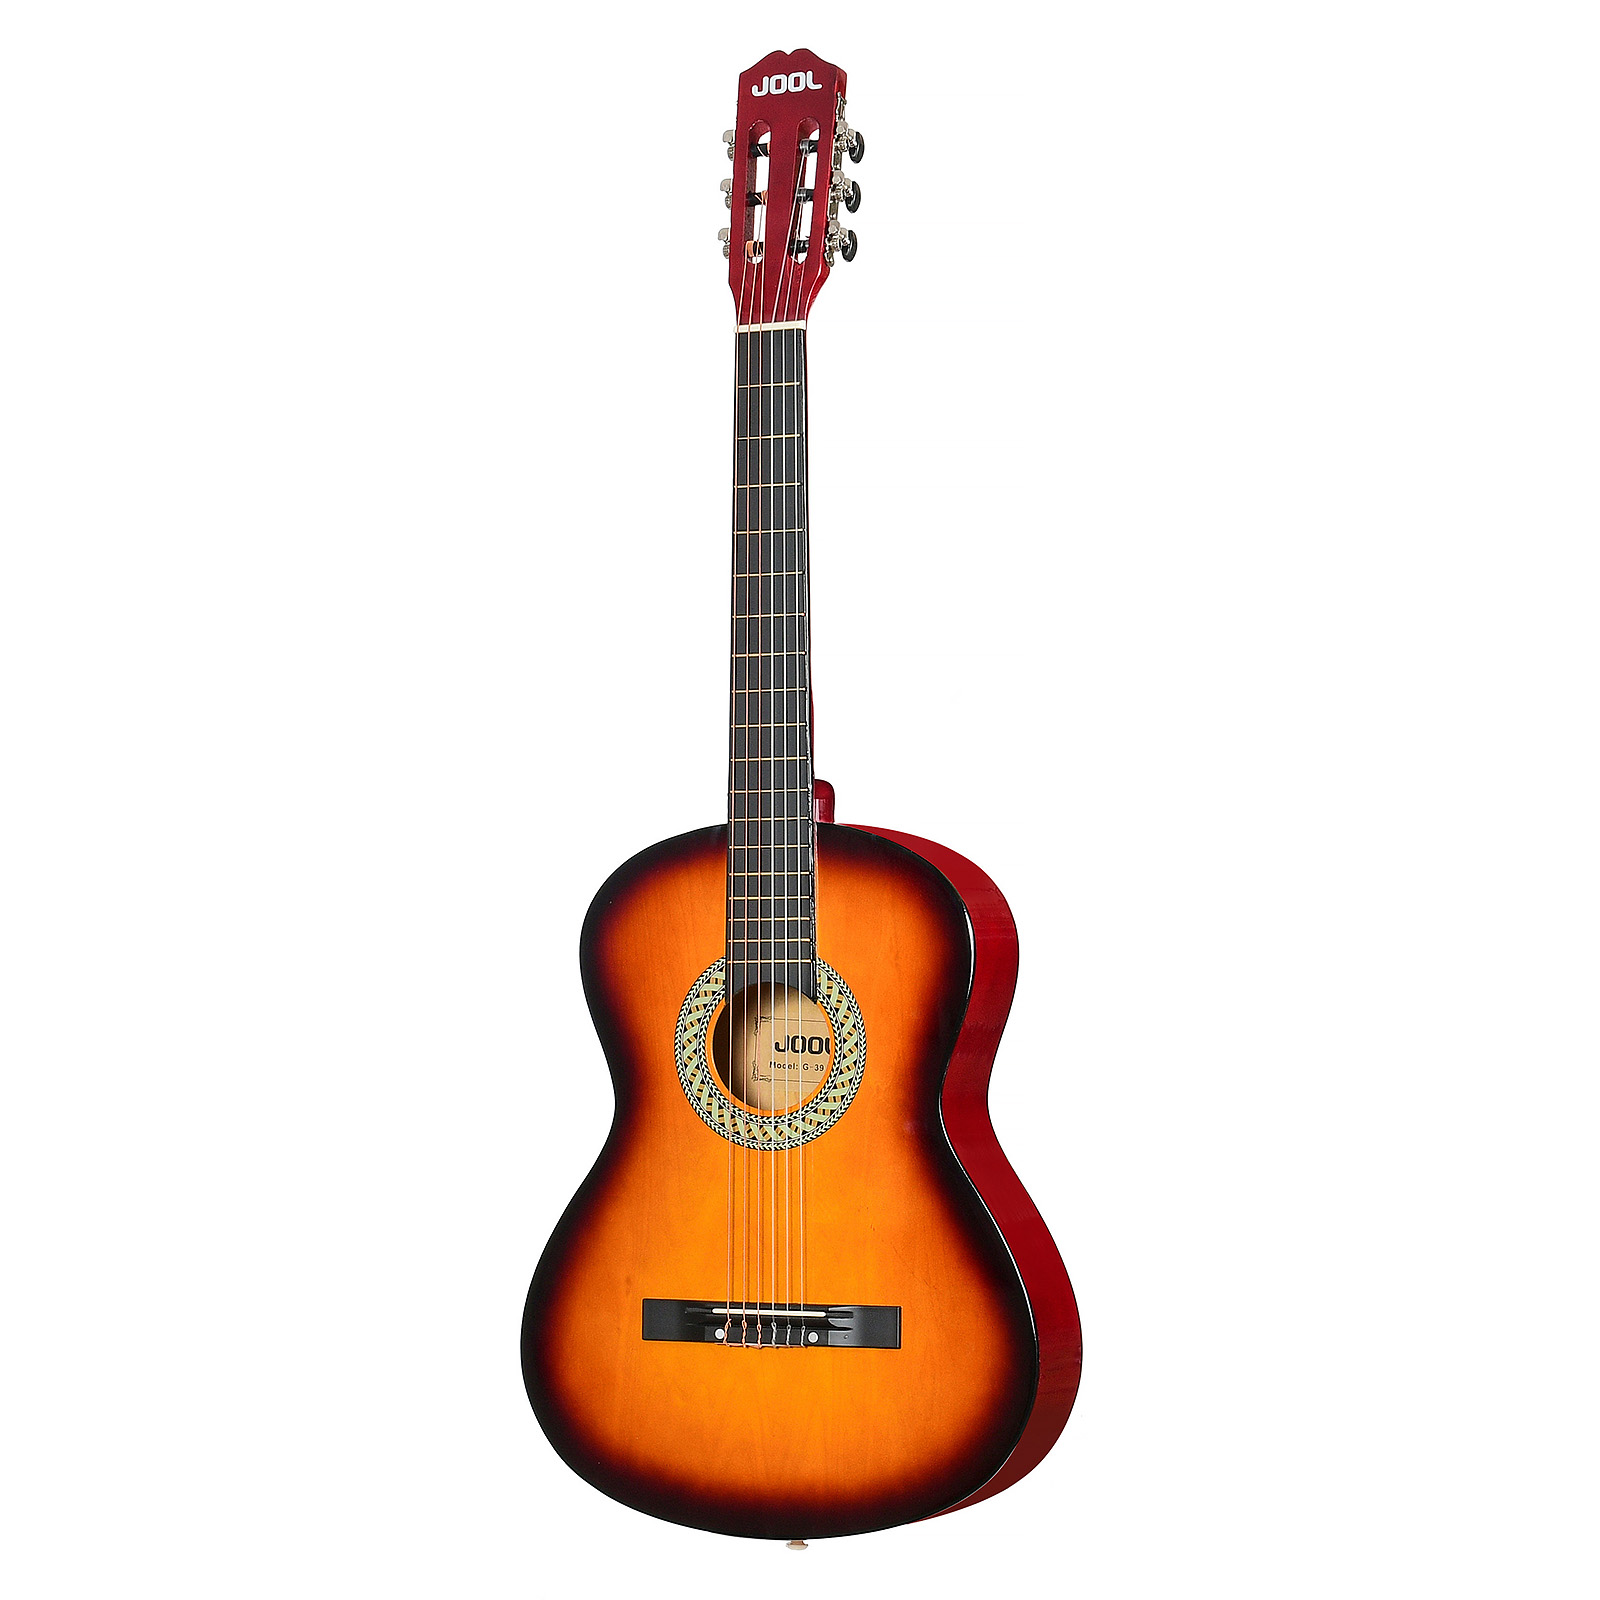 Jool G-39 Sb 4/4 - Классическая гитара, цвет санберст